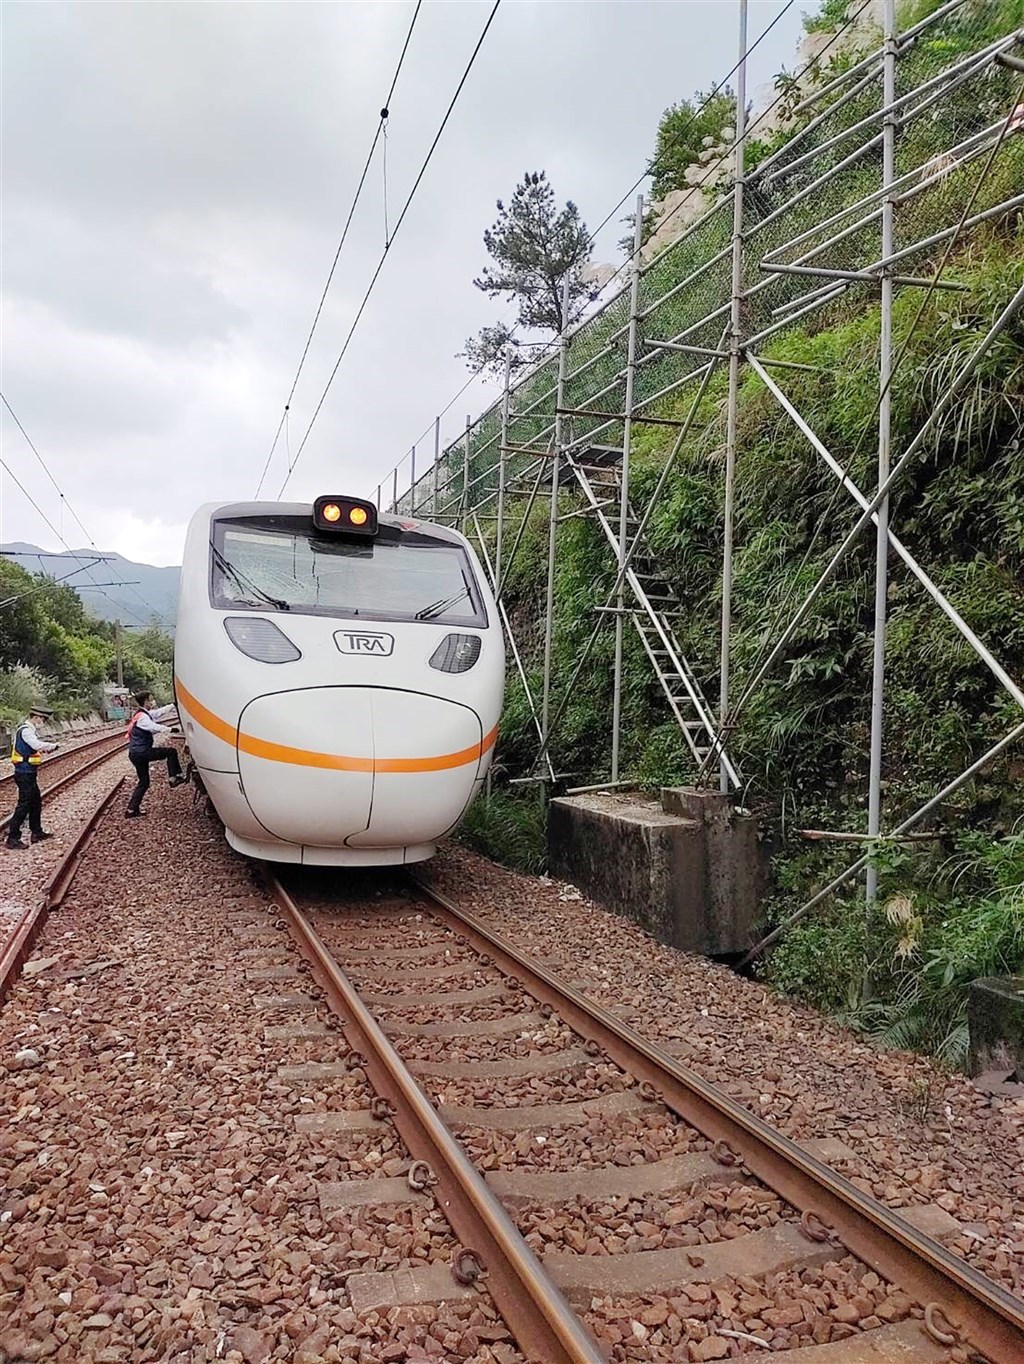 The damaged Taroko Express train. Photo courtesy of the TRA